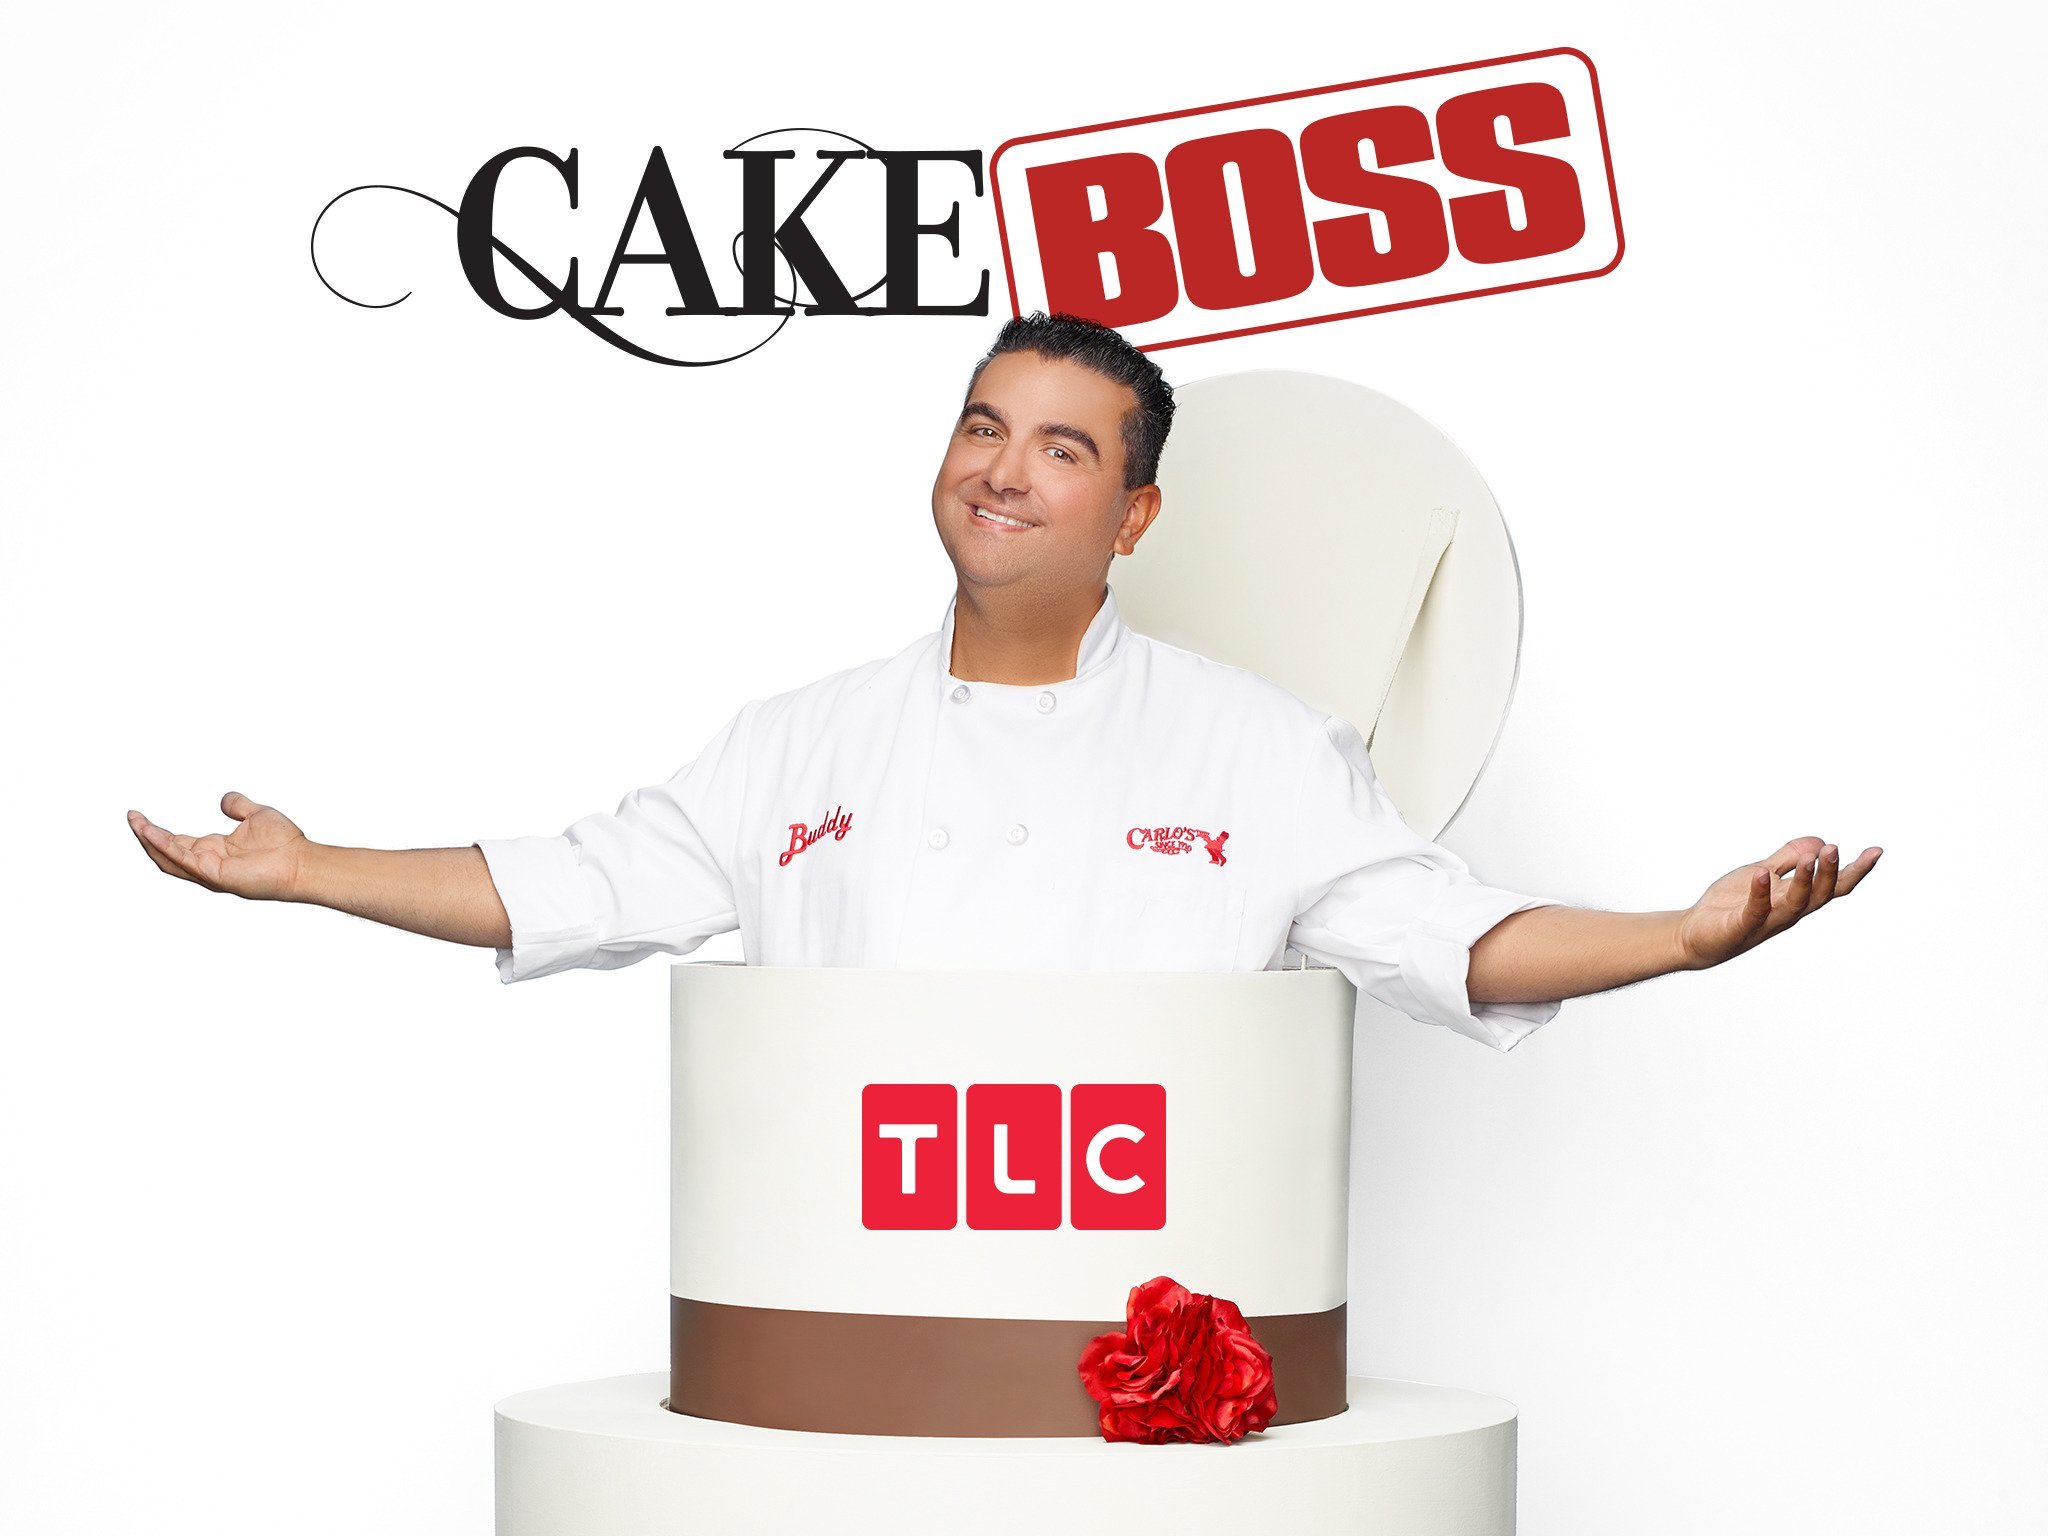 Full Episodes Of Cake Boss Free Online